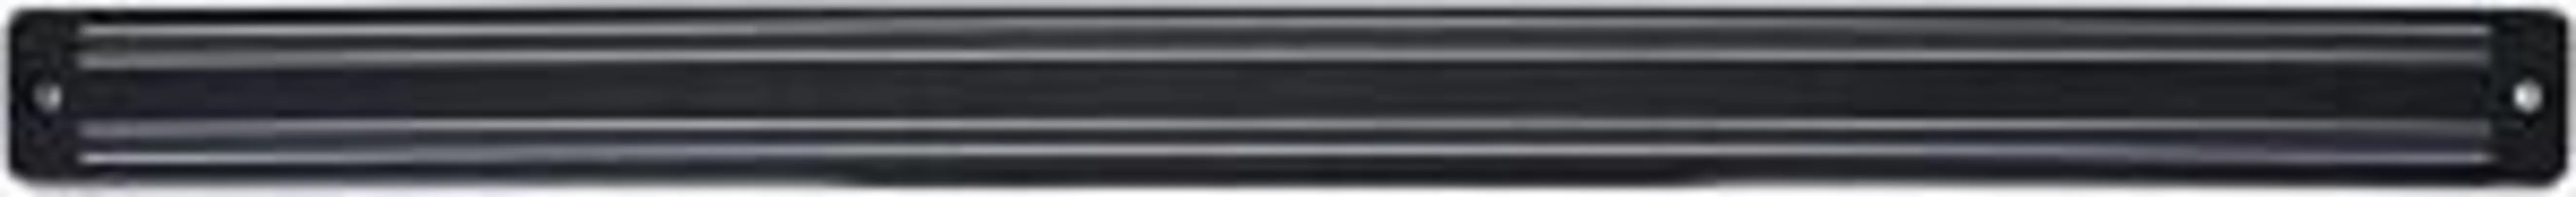 Barra Magnética para Facas Mimo Style Preto 45cm - R$21